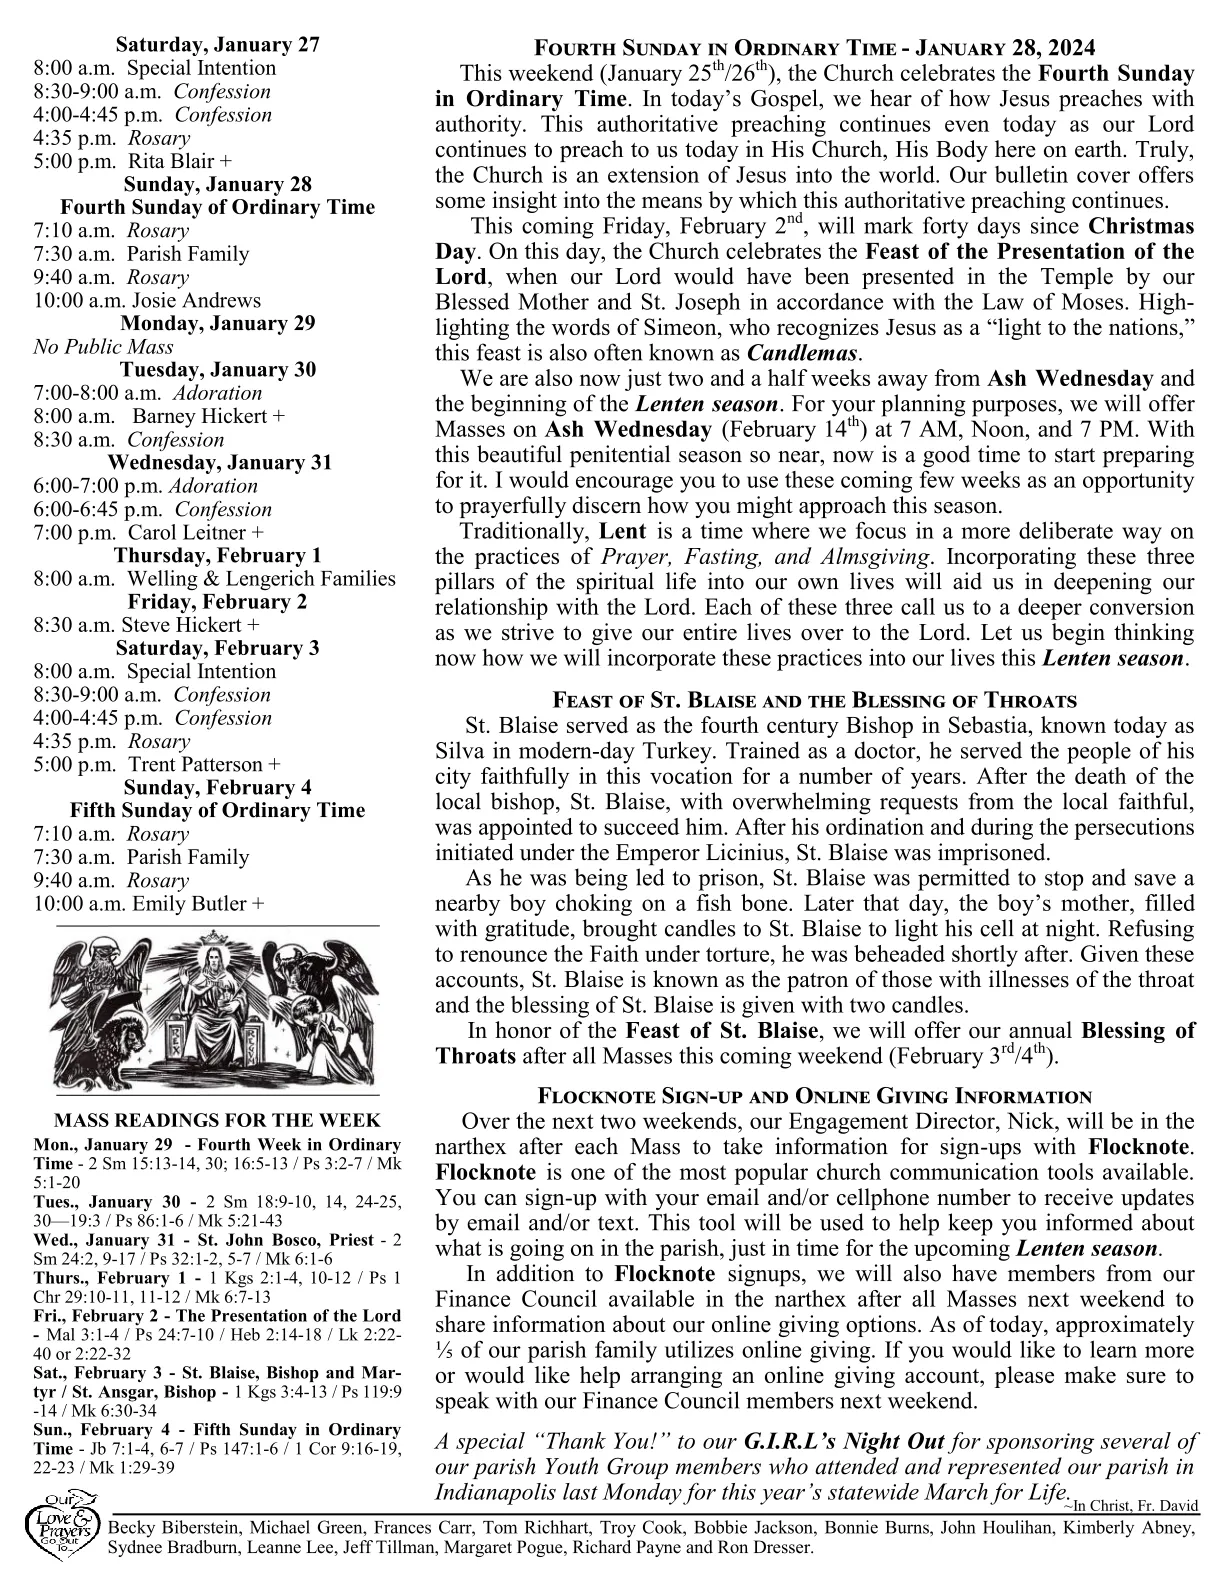 Jan 28, 2024 - Bulletin - Page 2